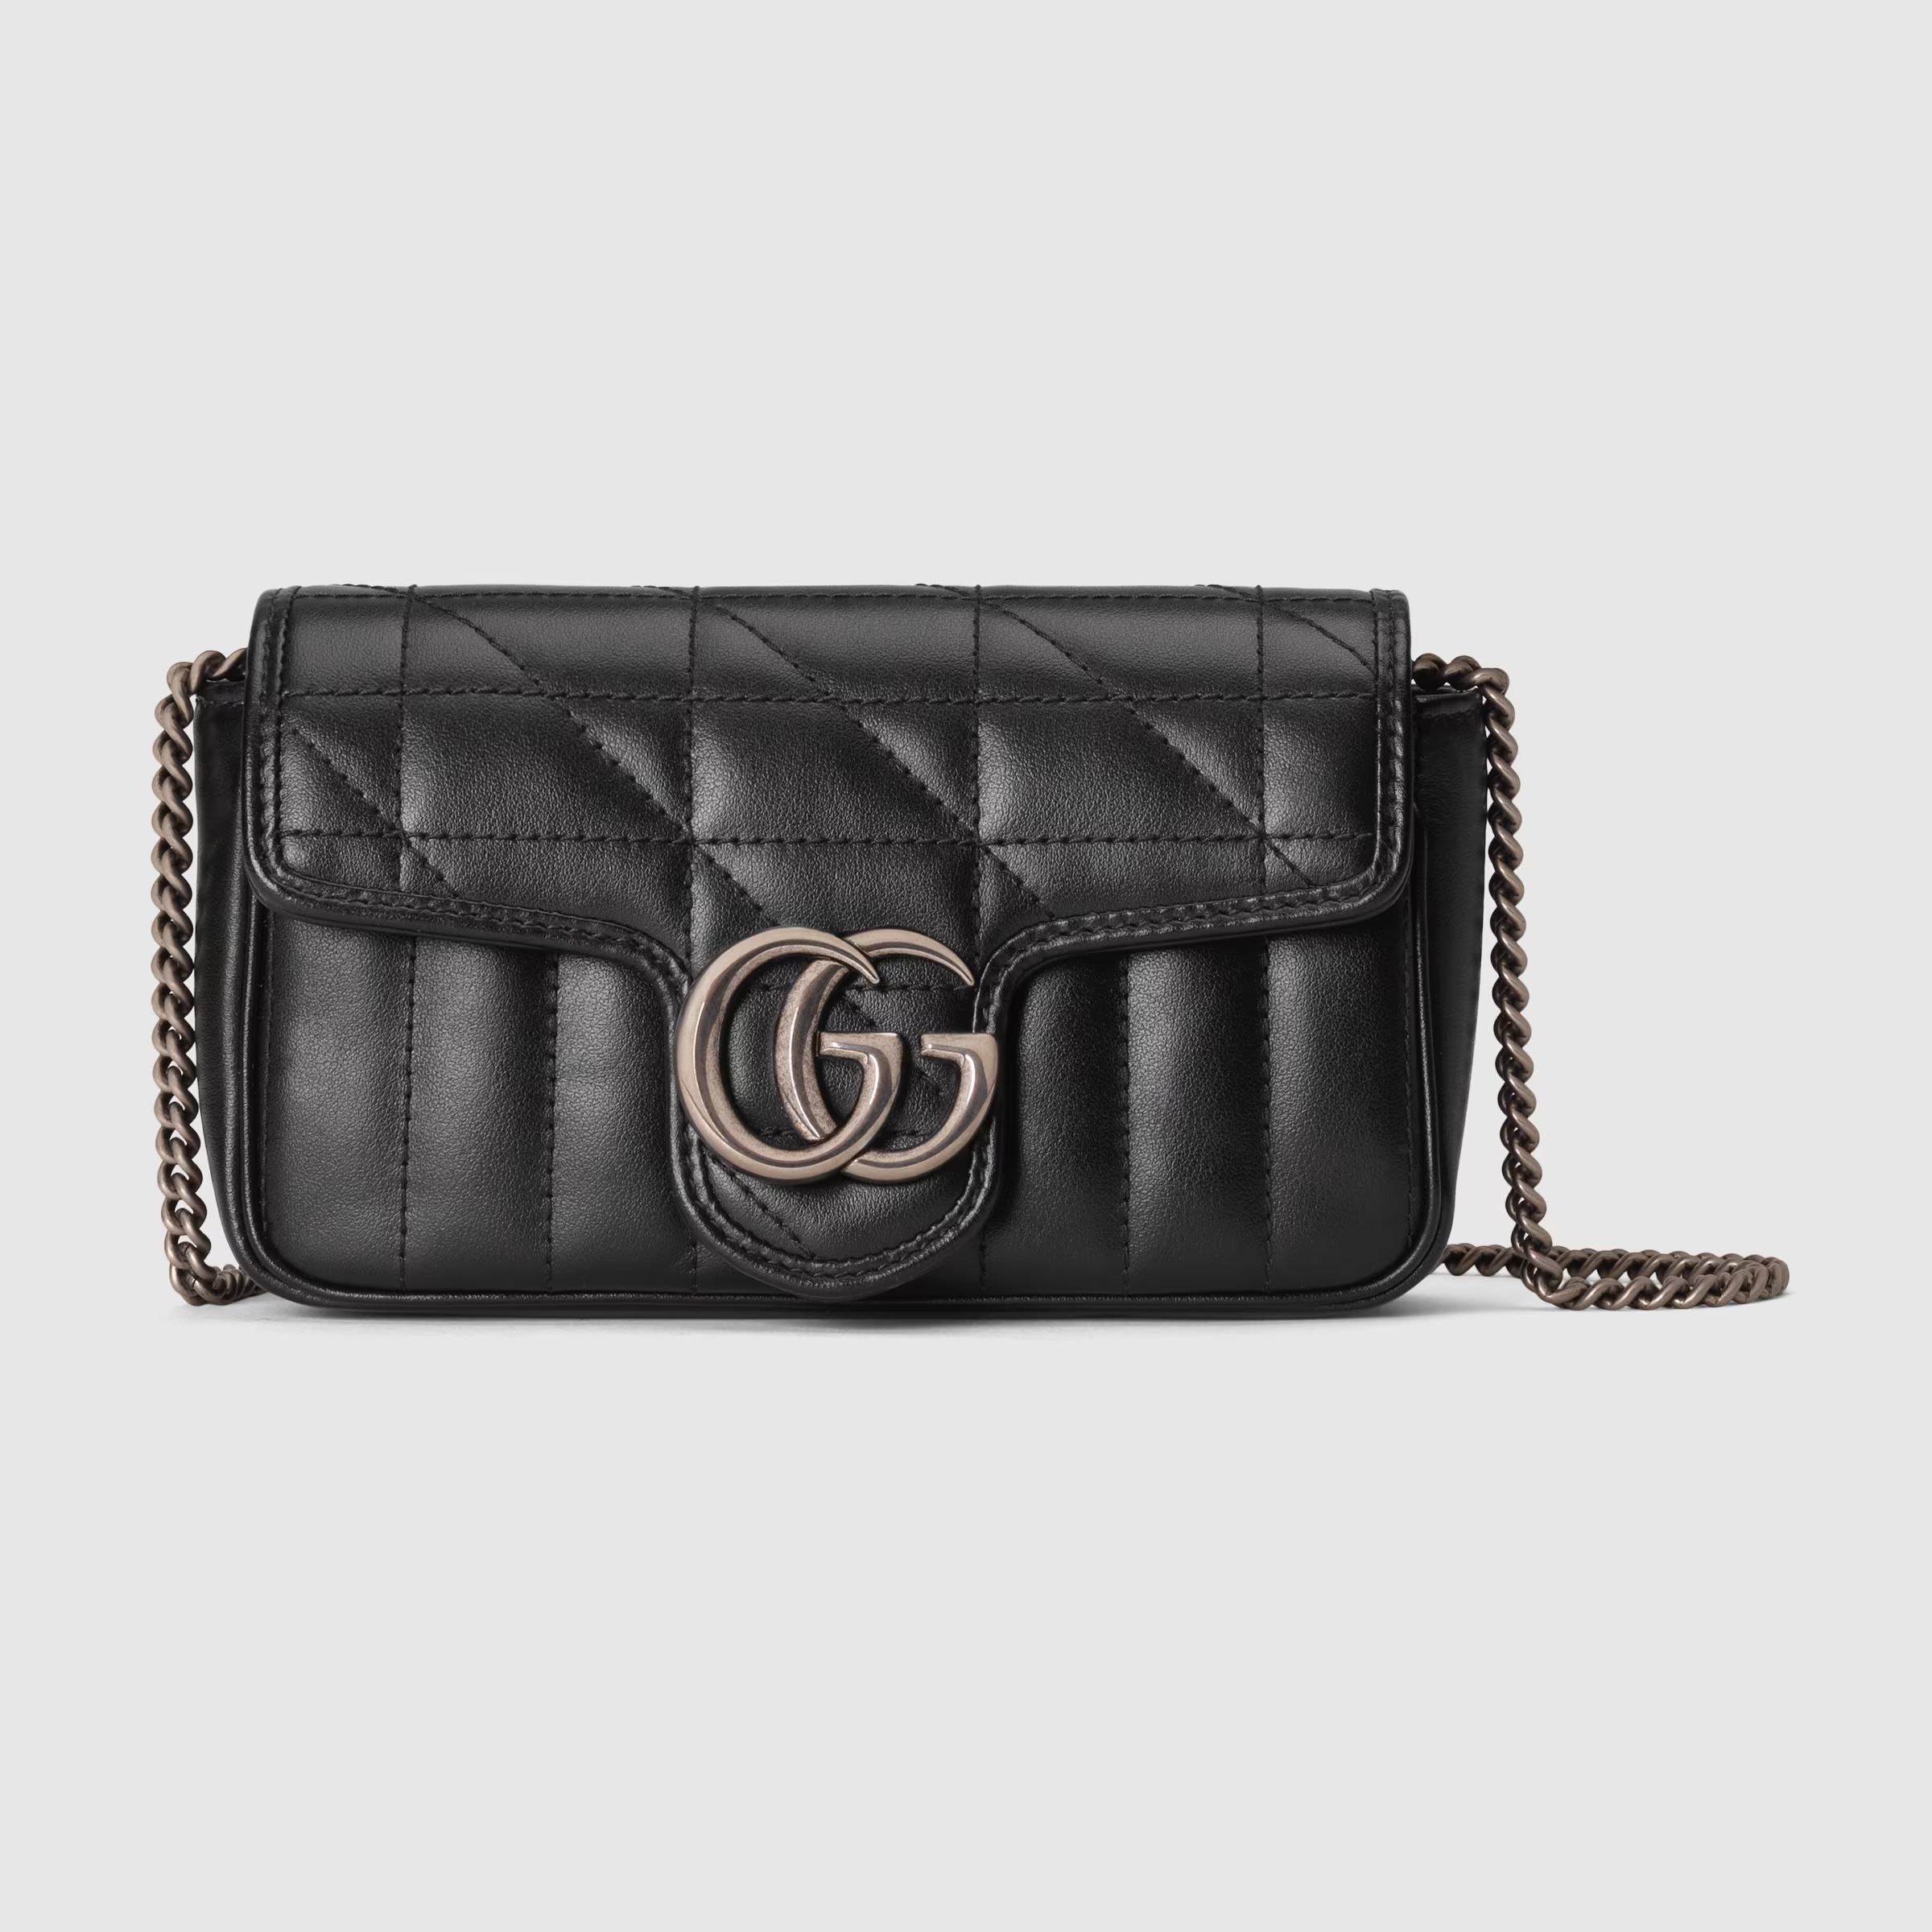 Gucci GG Marmont super mini bag | Gucci (US)